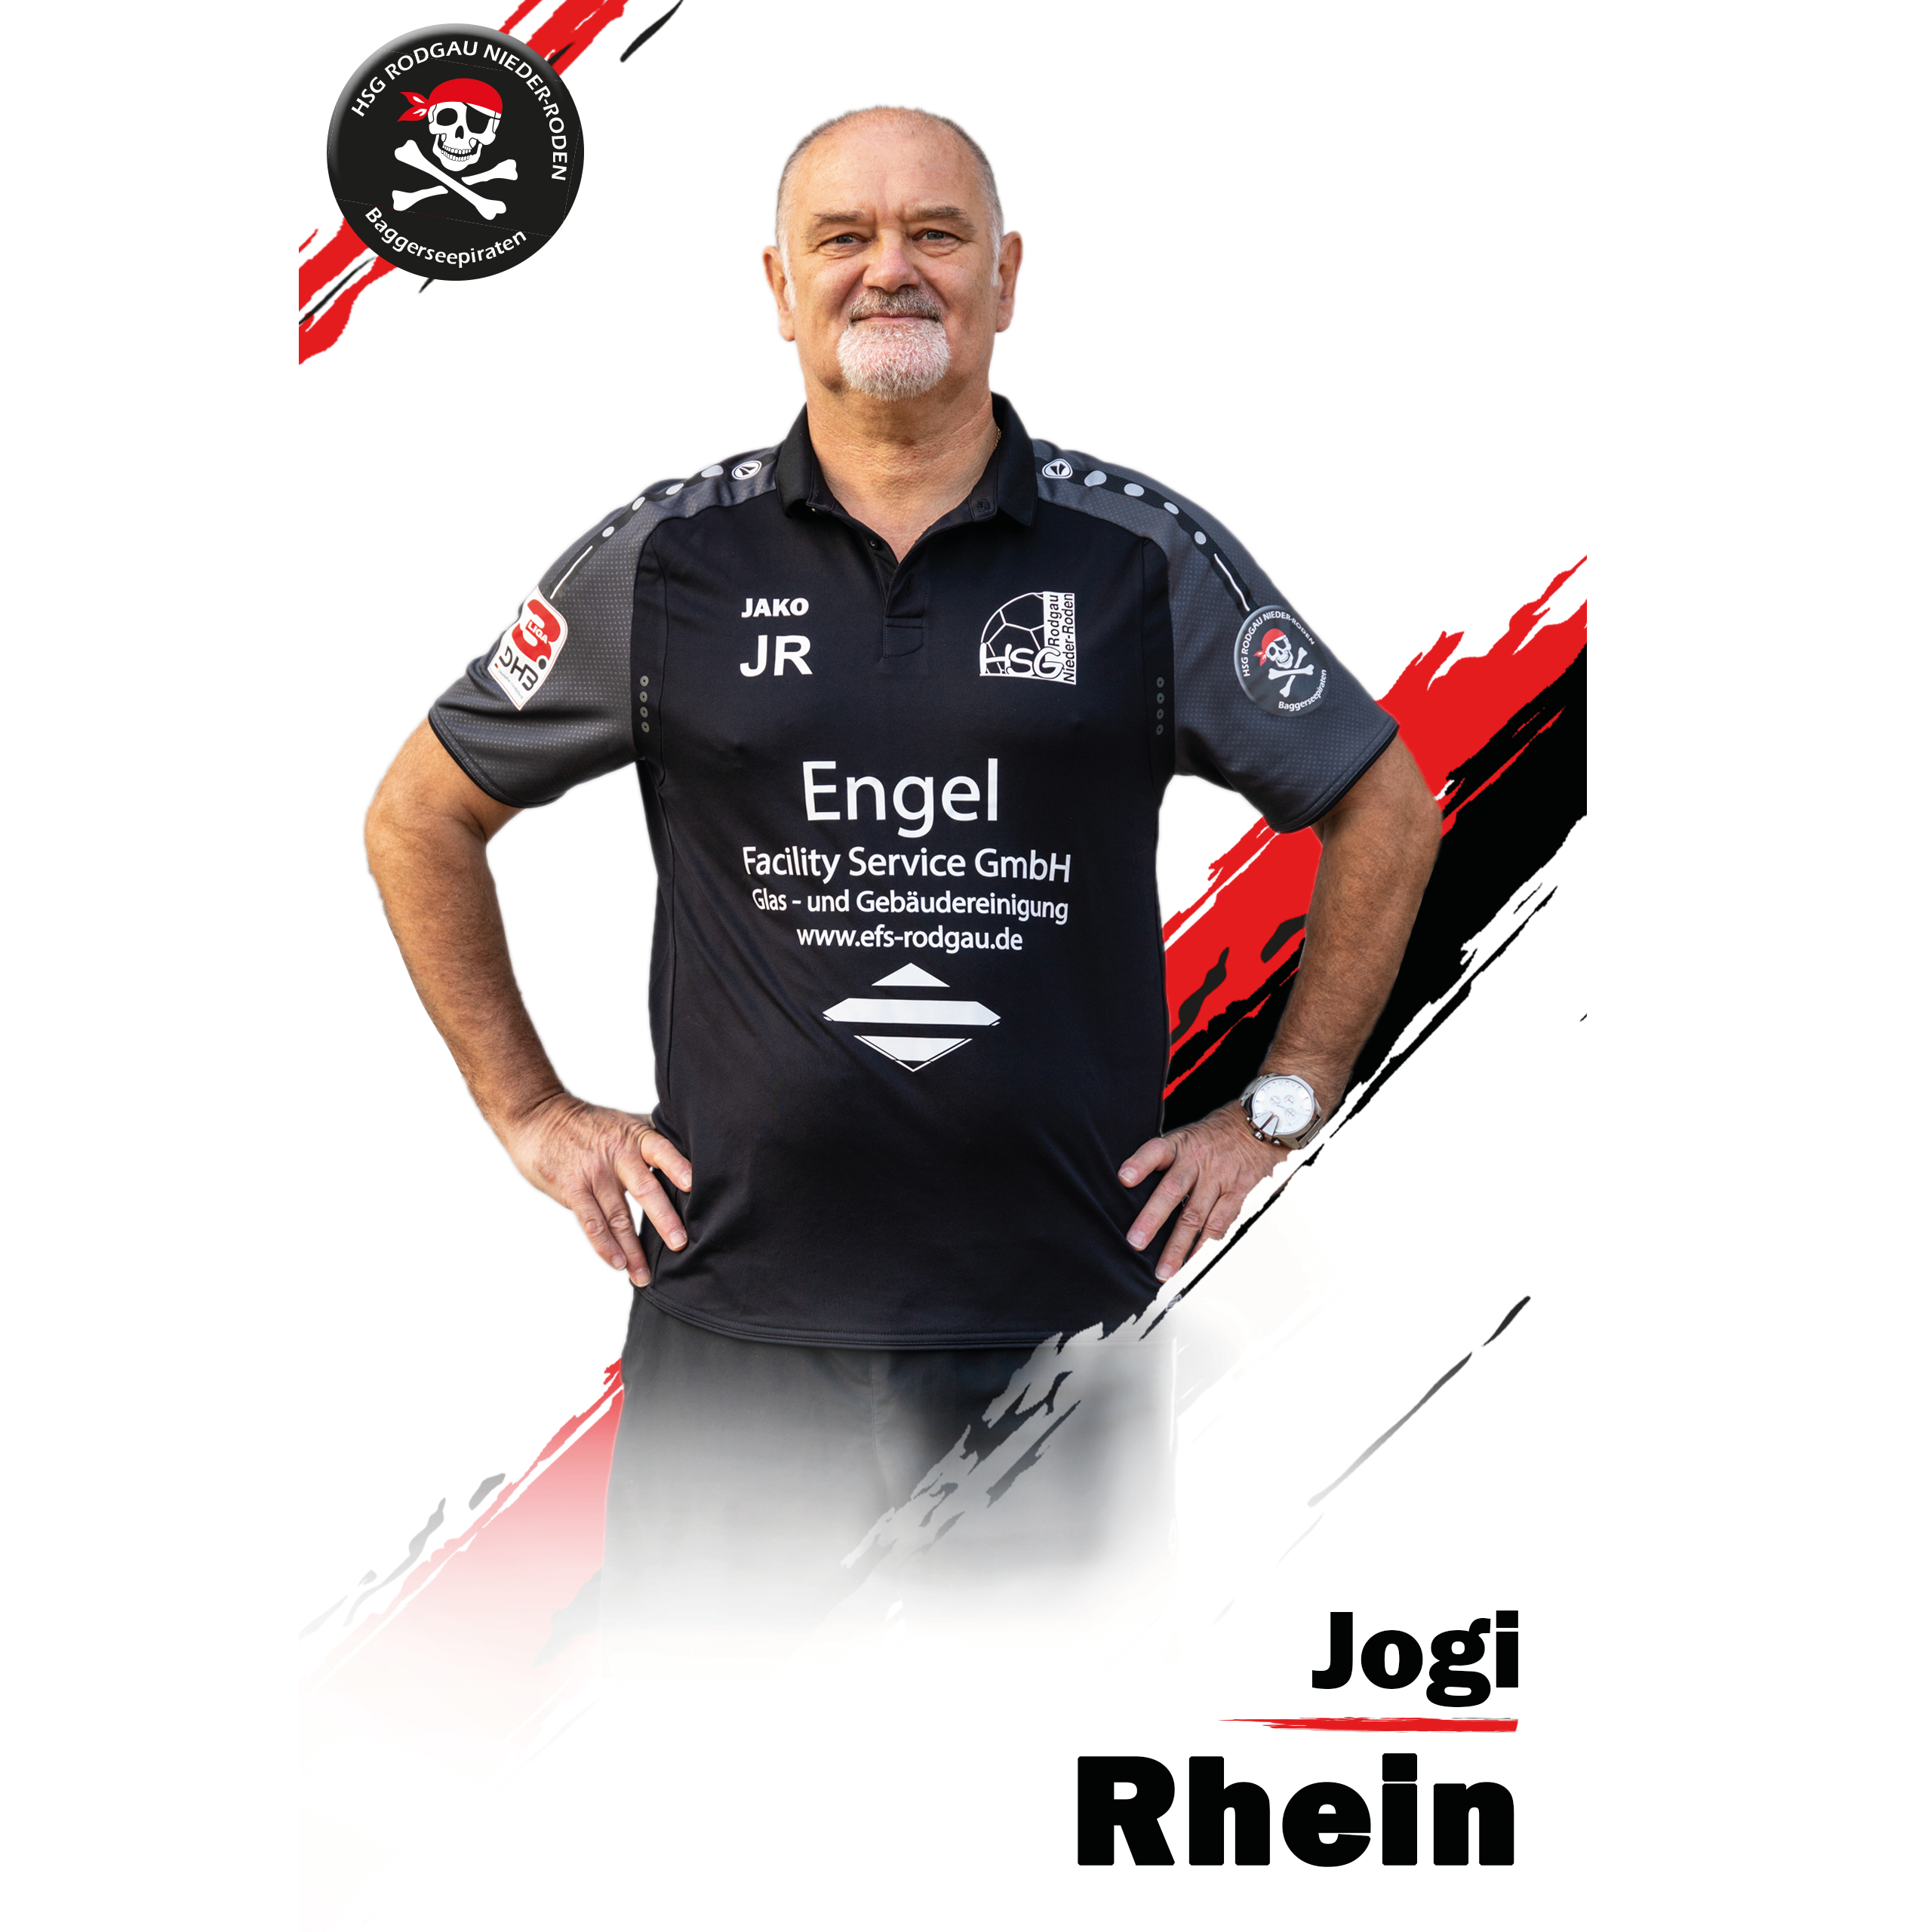 Joachim Rhein